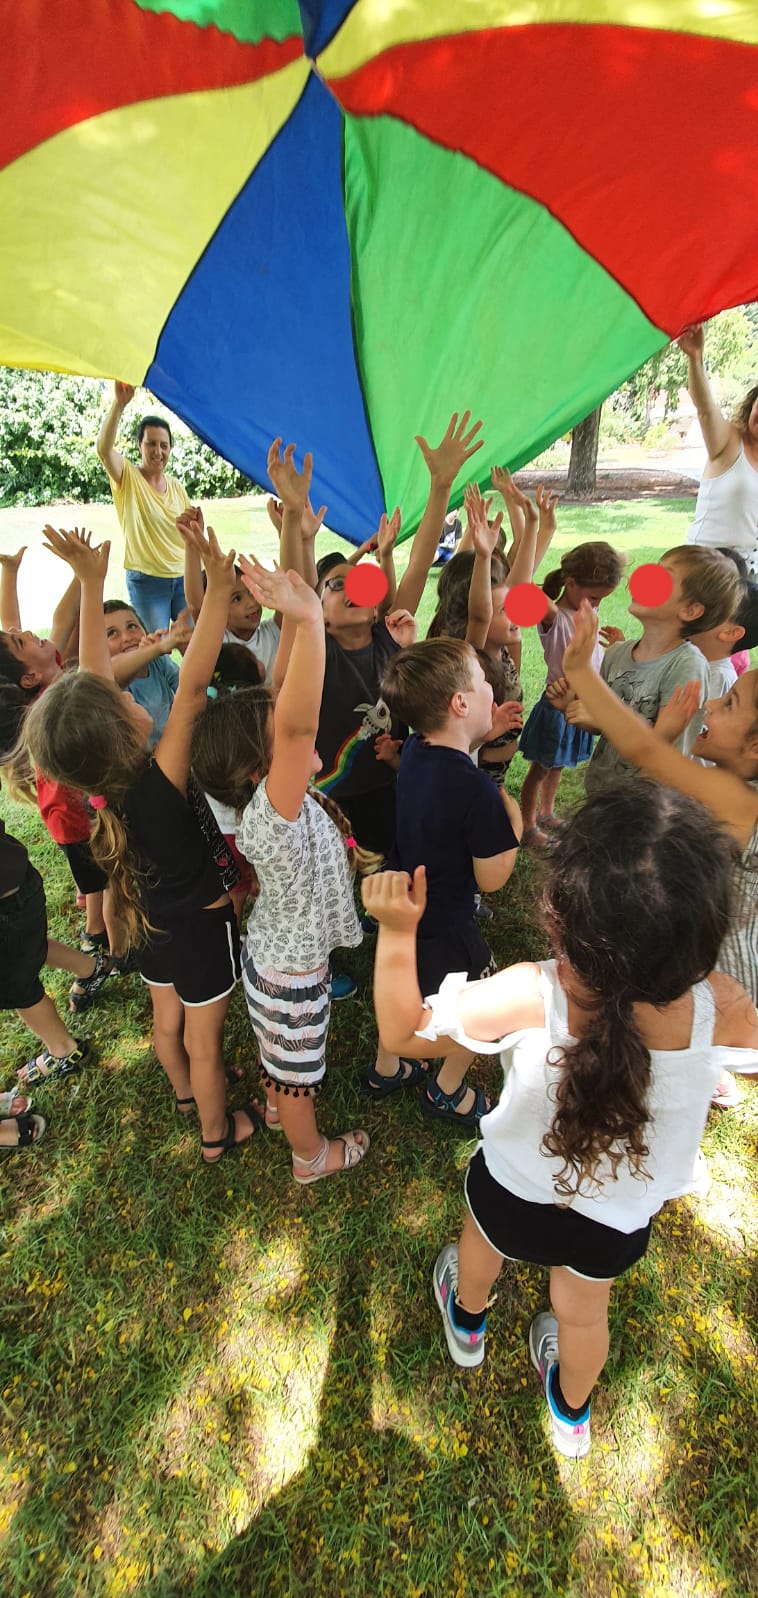 קבוצת ילדים בחוץ עם הדשא משחקים עם מצנח צבעוני גדול מעליהם